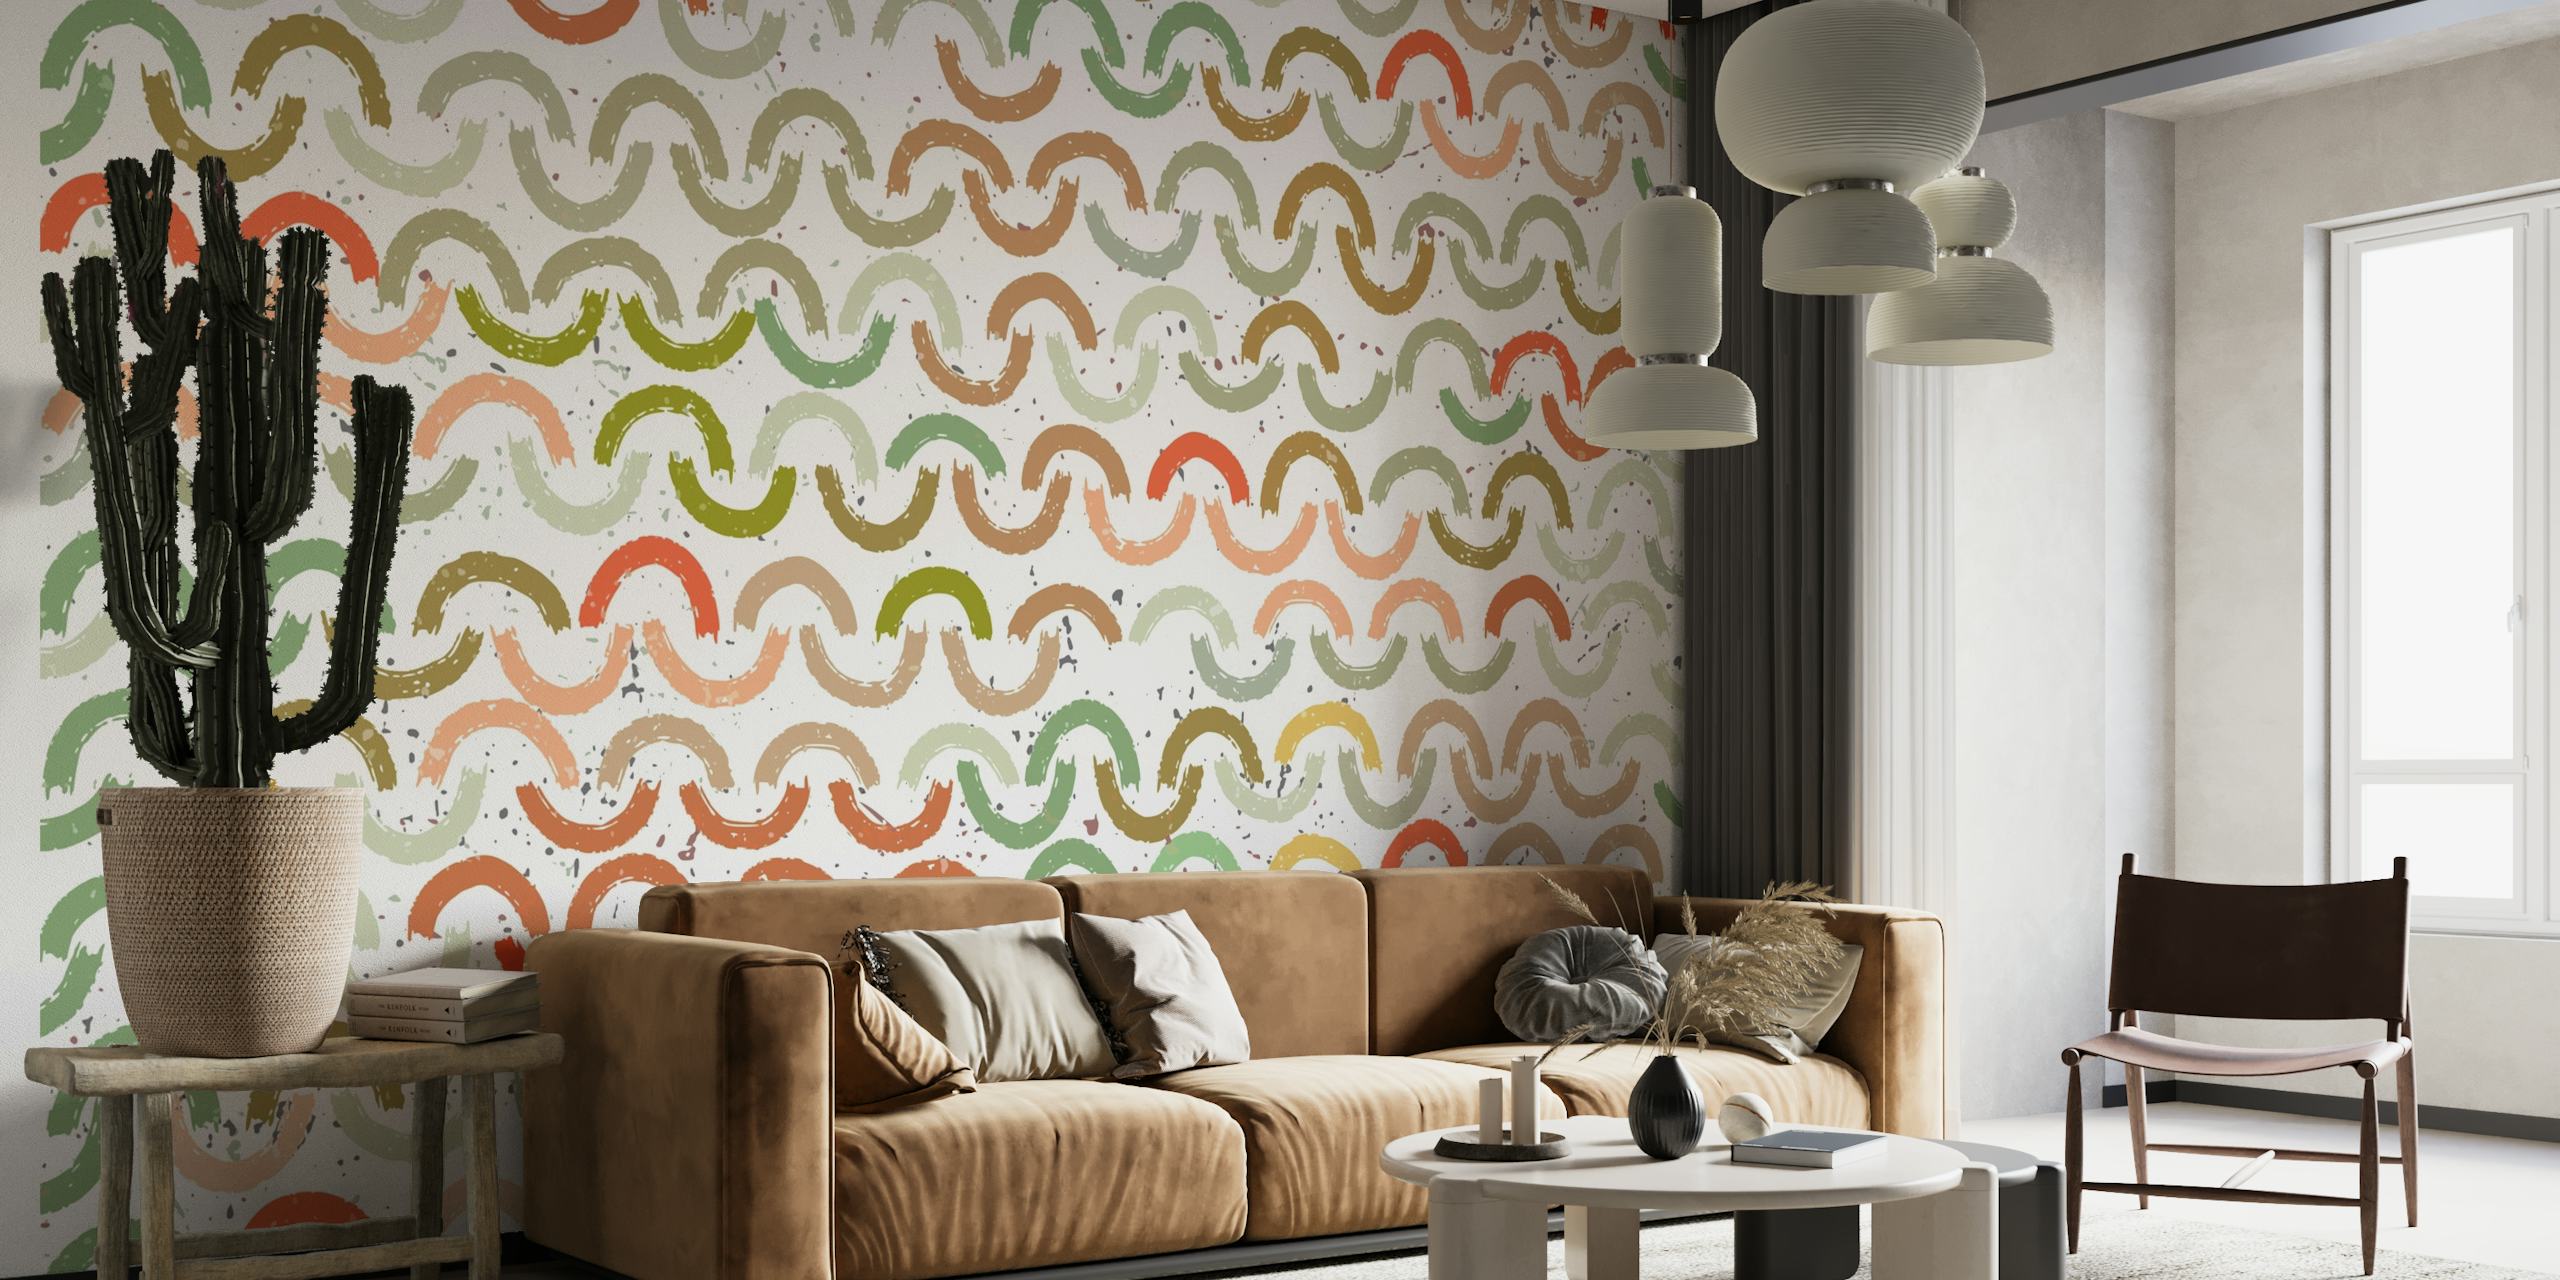 Farverigt vægmaleri med mønster af malede buer i forskellige nuancer